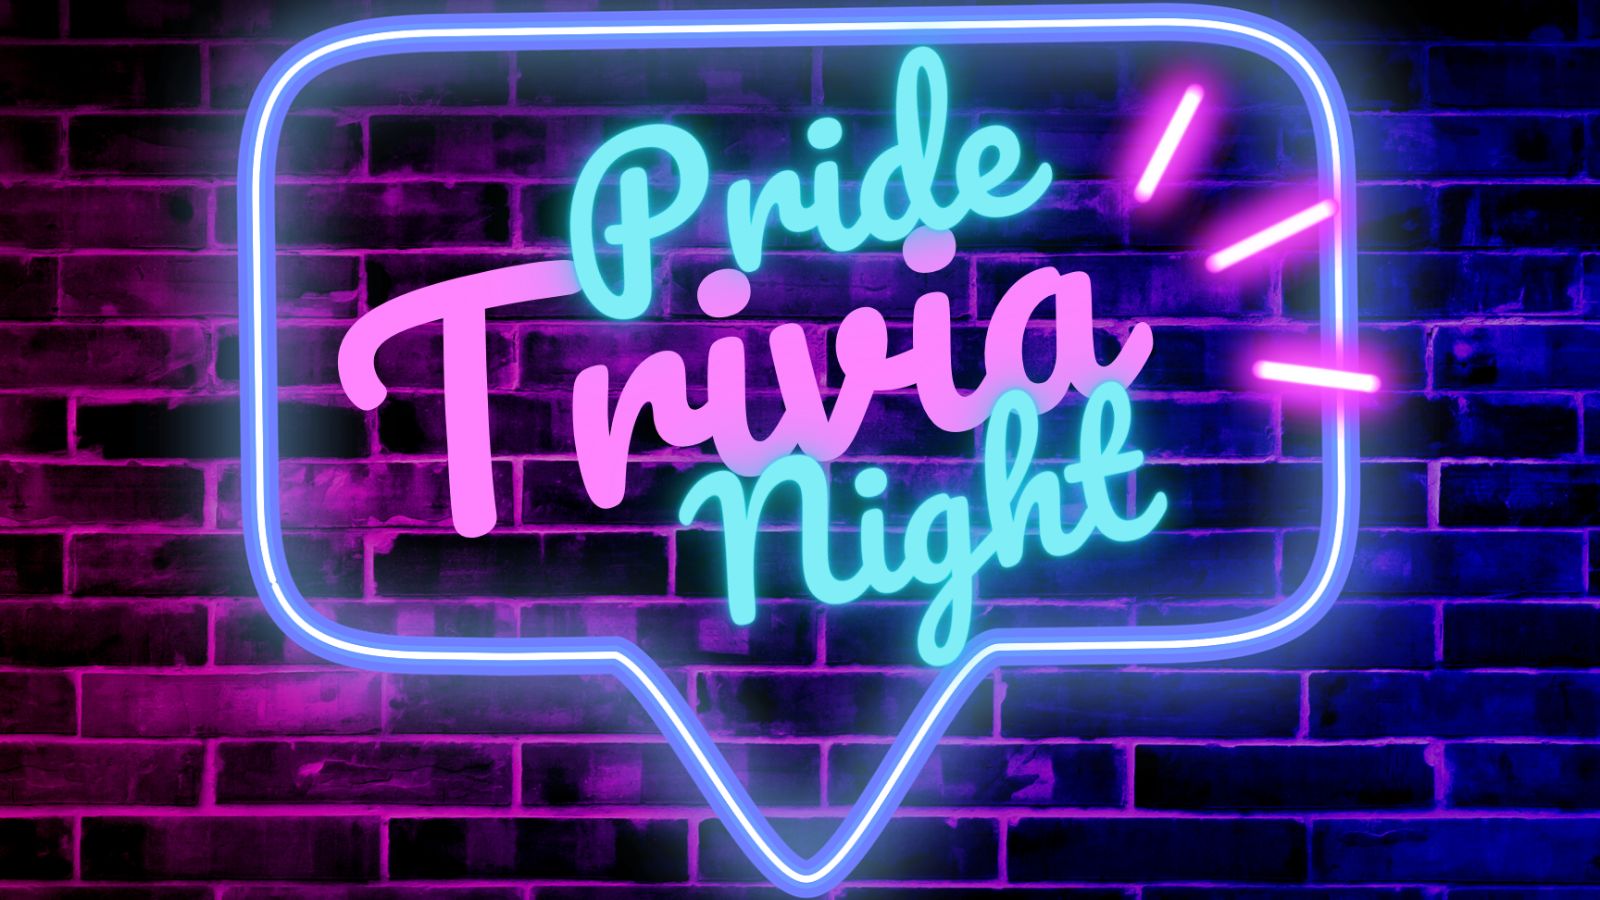 ¡Ven a Pride Trivia Night de Guimel!